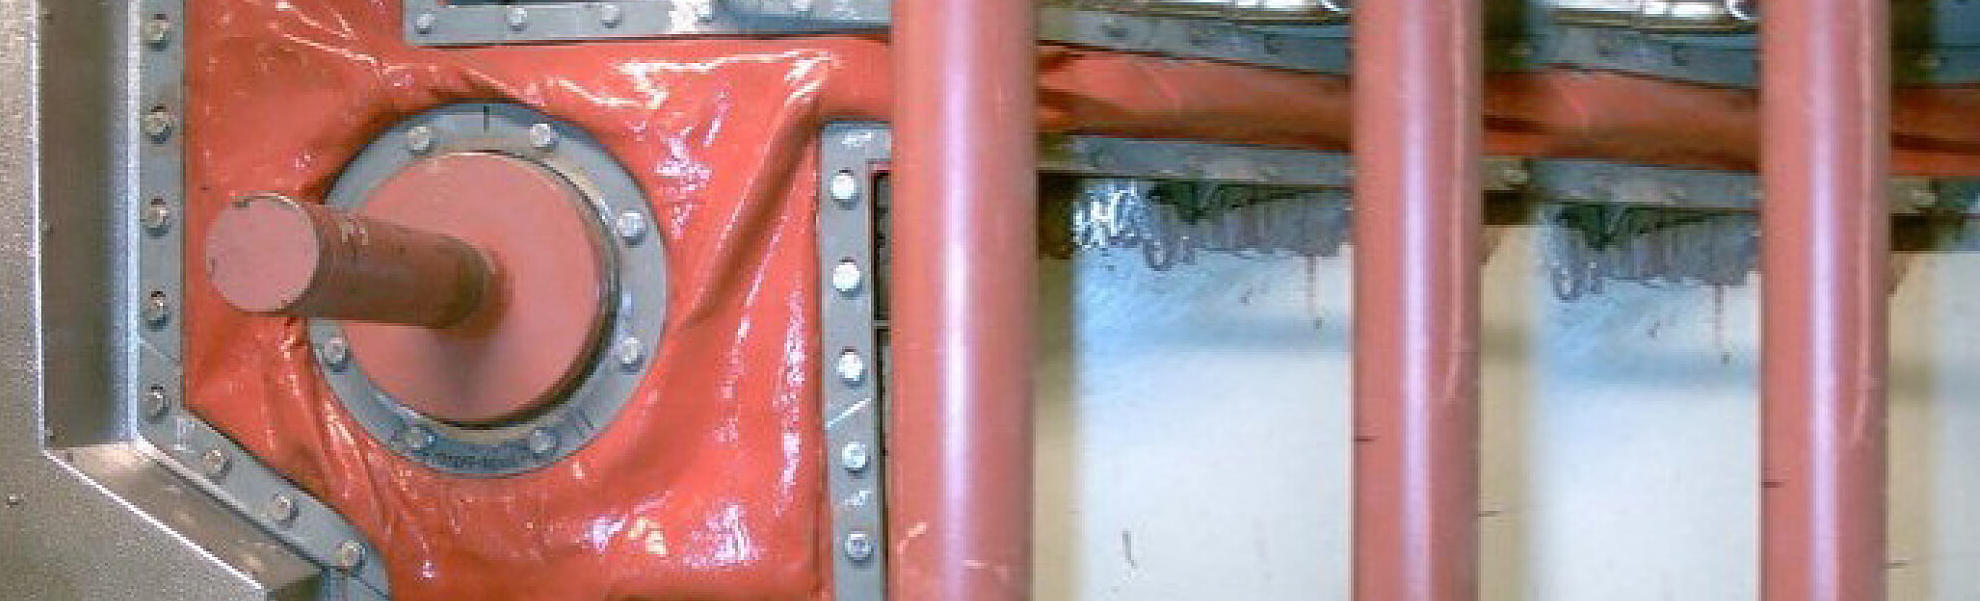 Frenzelit Weichstoffkompensatoren als Kesselabdichtung eingebaut:Sammelrollerdurchtritt am Boiler